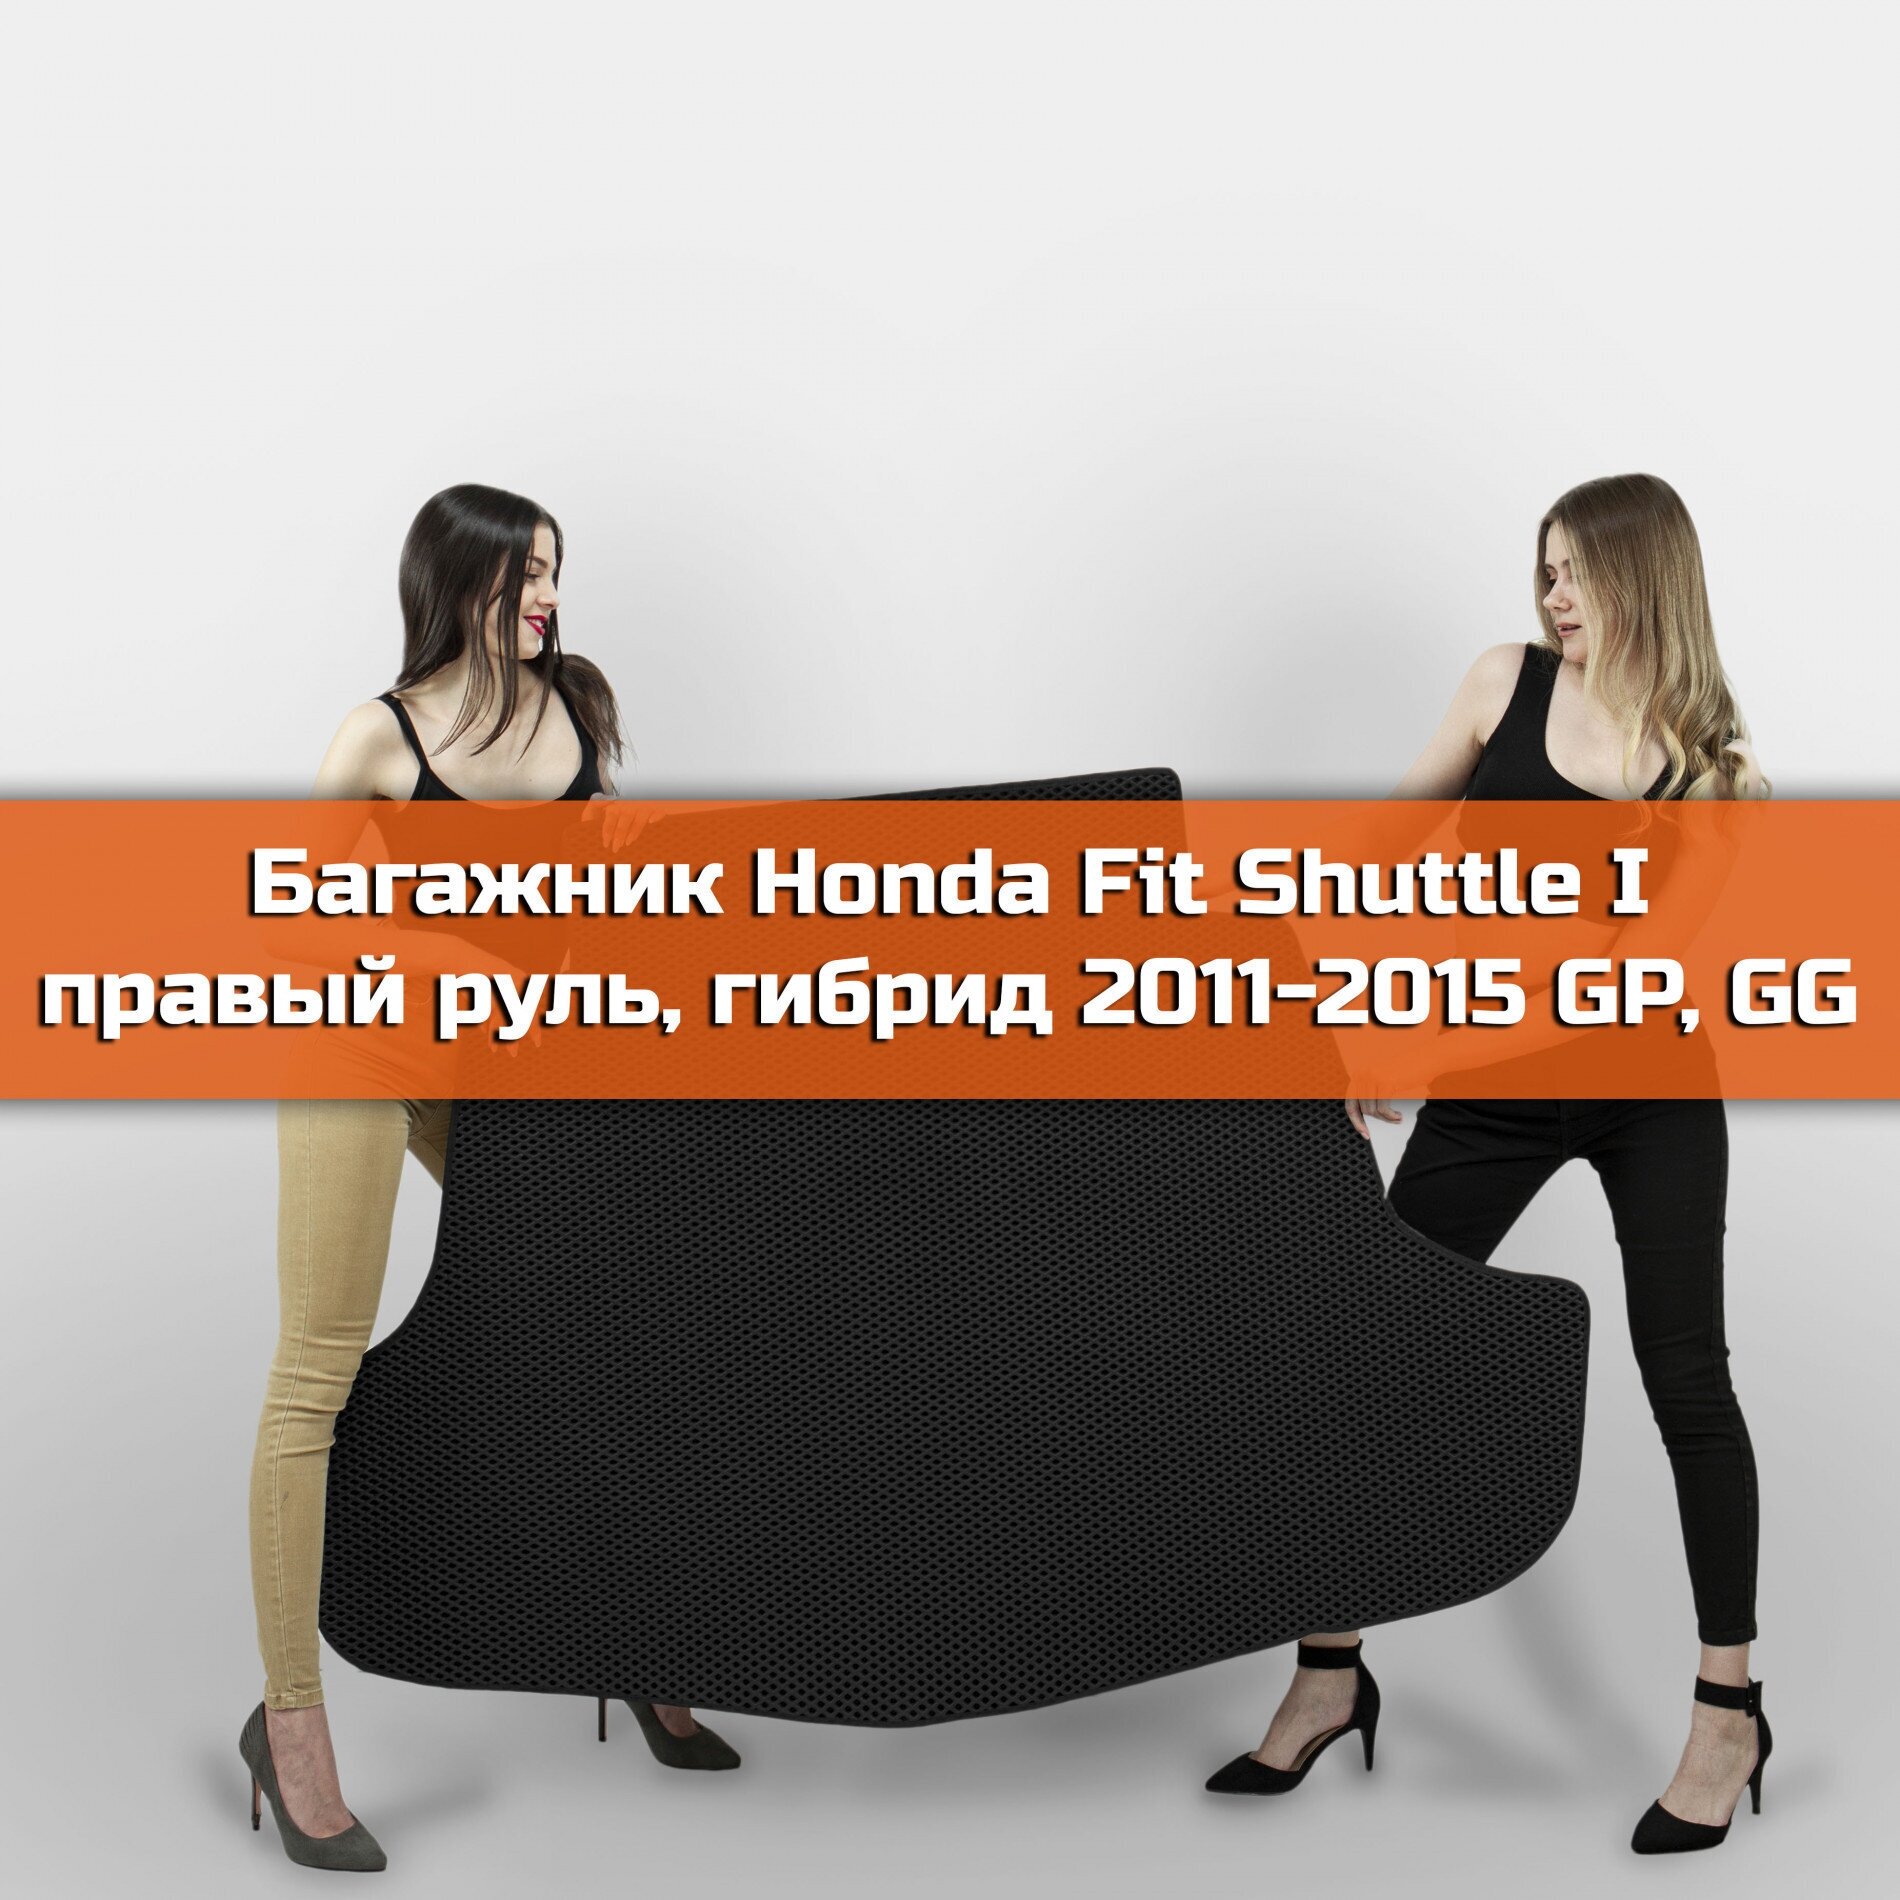 Коврик EVA в багажник для Honda Fit Shuttle I правый руль Гибрид GP, GG 2011-2015. 1 Ромб Черный с черной окантовкой